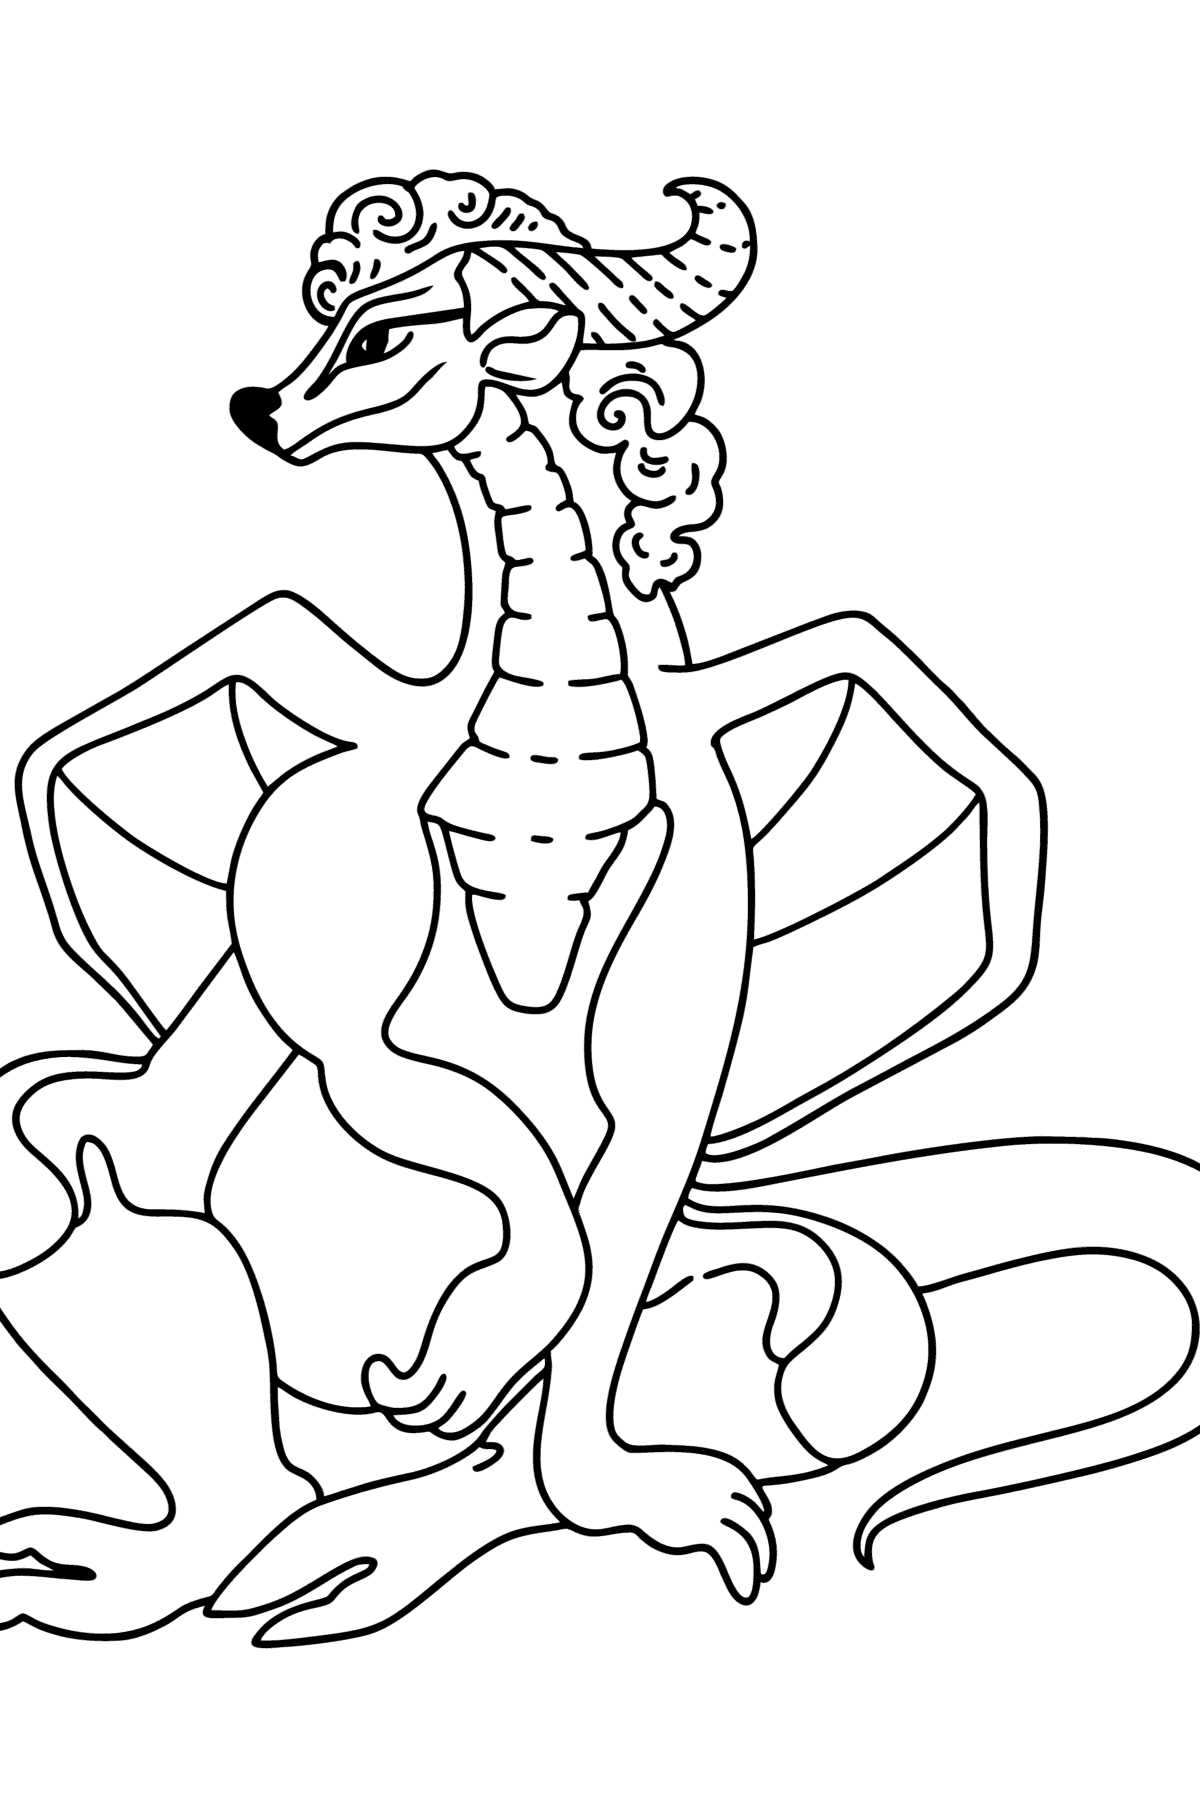 Desenho para colorir do Happy Dragon - Imagens para Colorir para Crianças